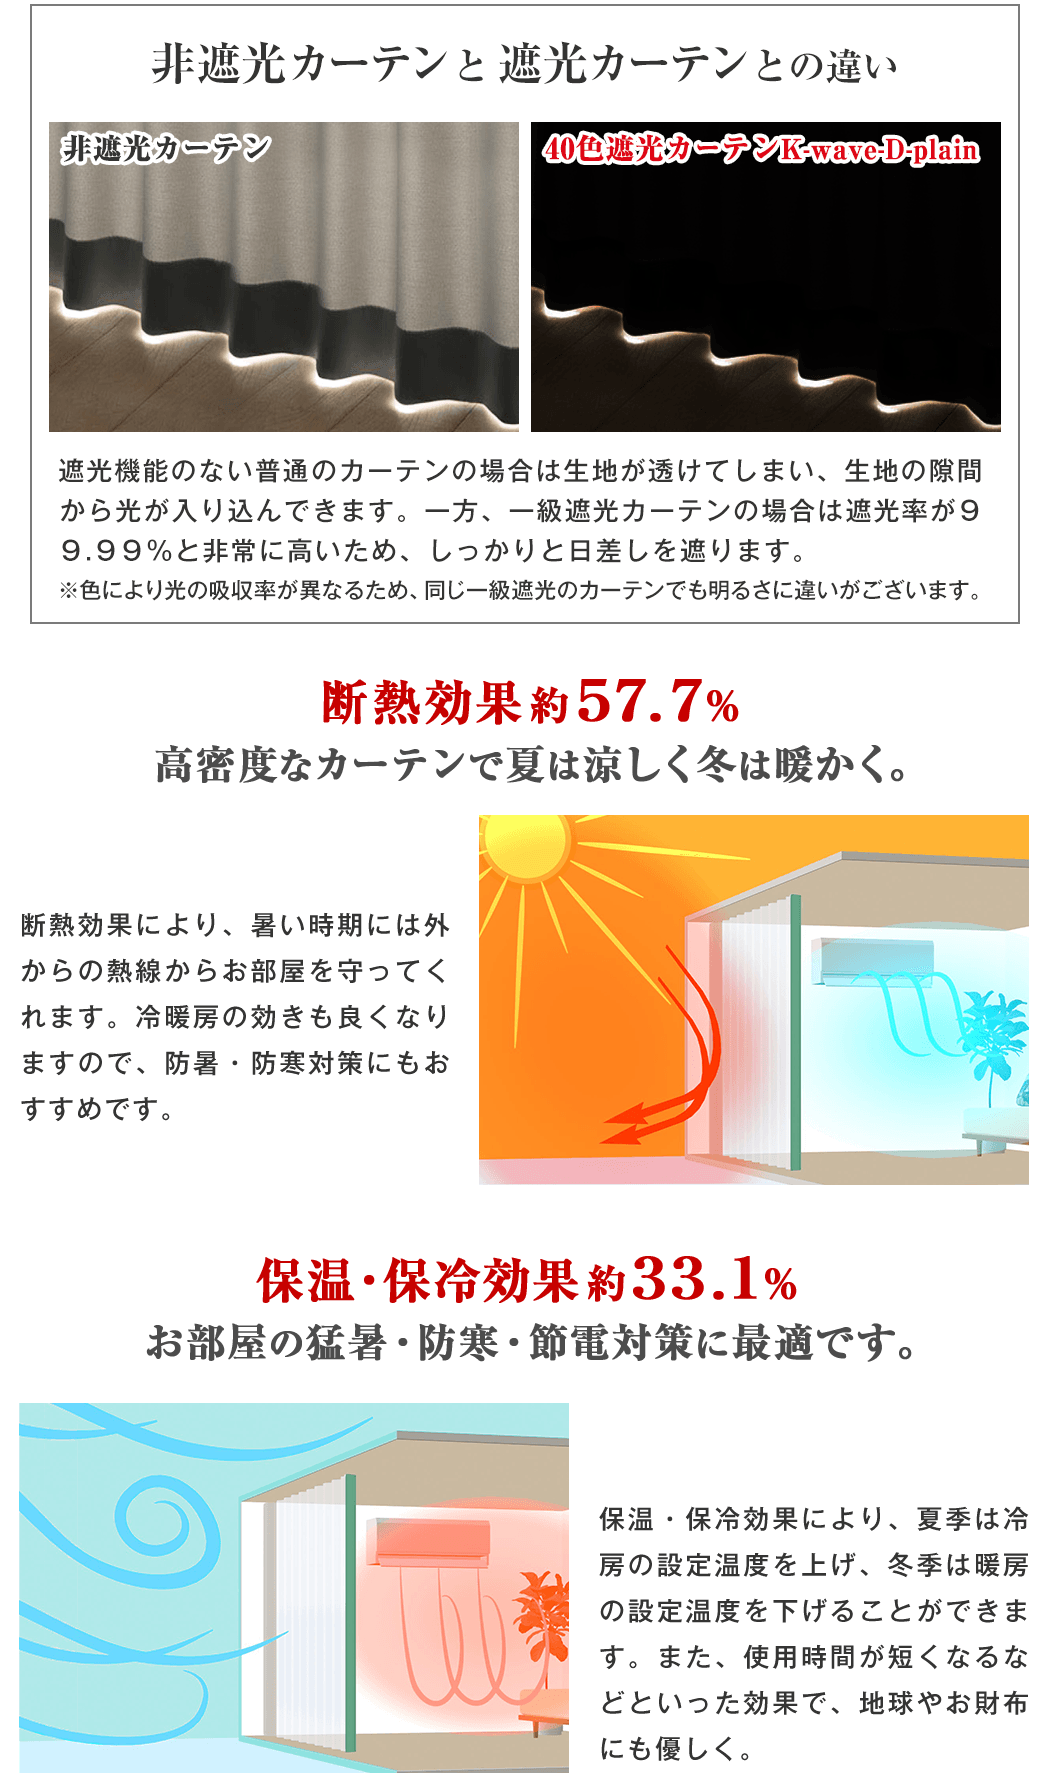 カーテンくれない 節電対策に「K-wave-D-plain」 日本製 防炎 ラベル付40色×140サイズ 1級遮光カーテン2枚組 保温 保冷 在庫有り  家具、インテリア